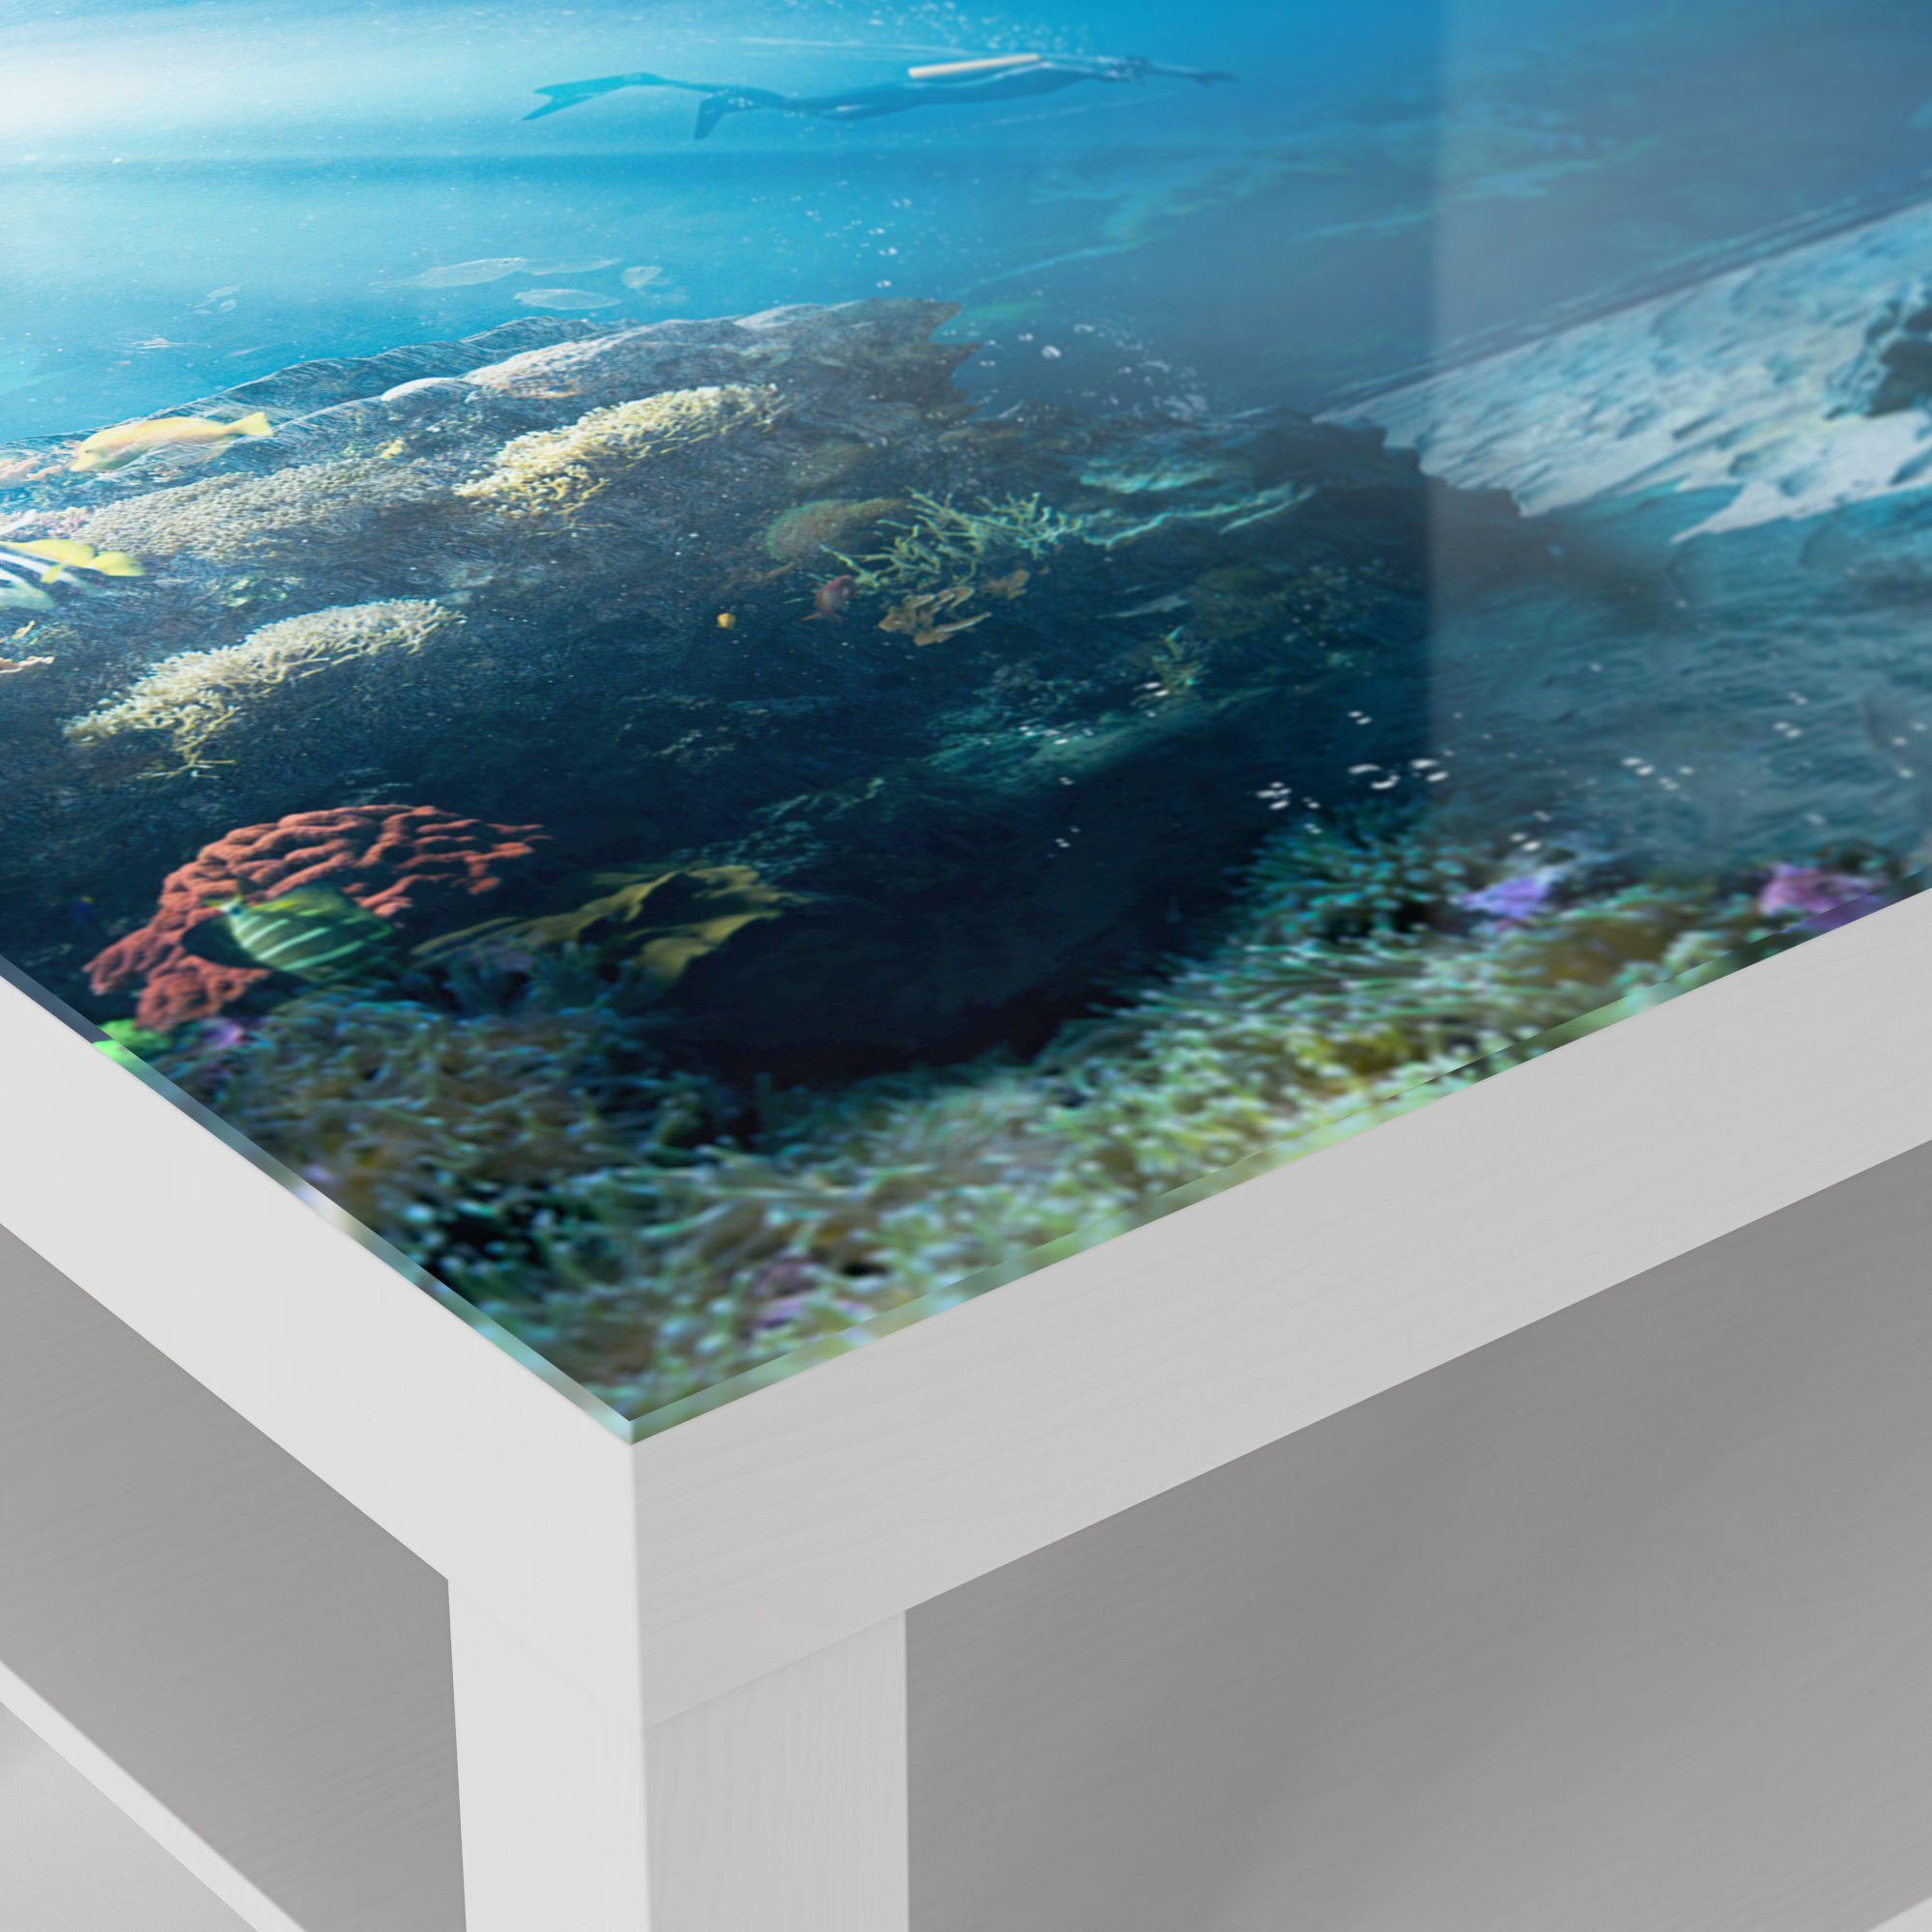 Couchtisch modern Glastisch Weiß Beistelltisch DEQORI 'Korallenriff-Taucher', Glas